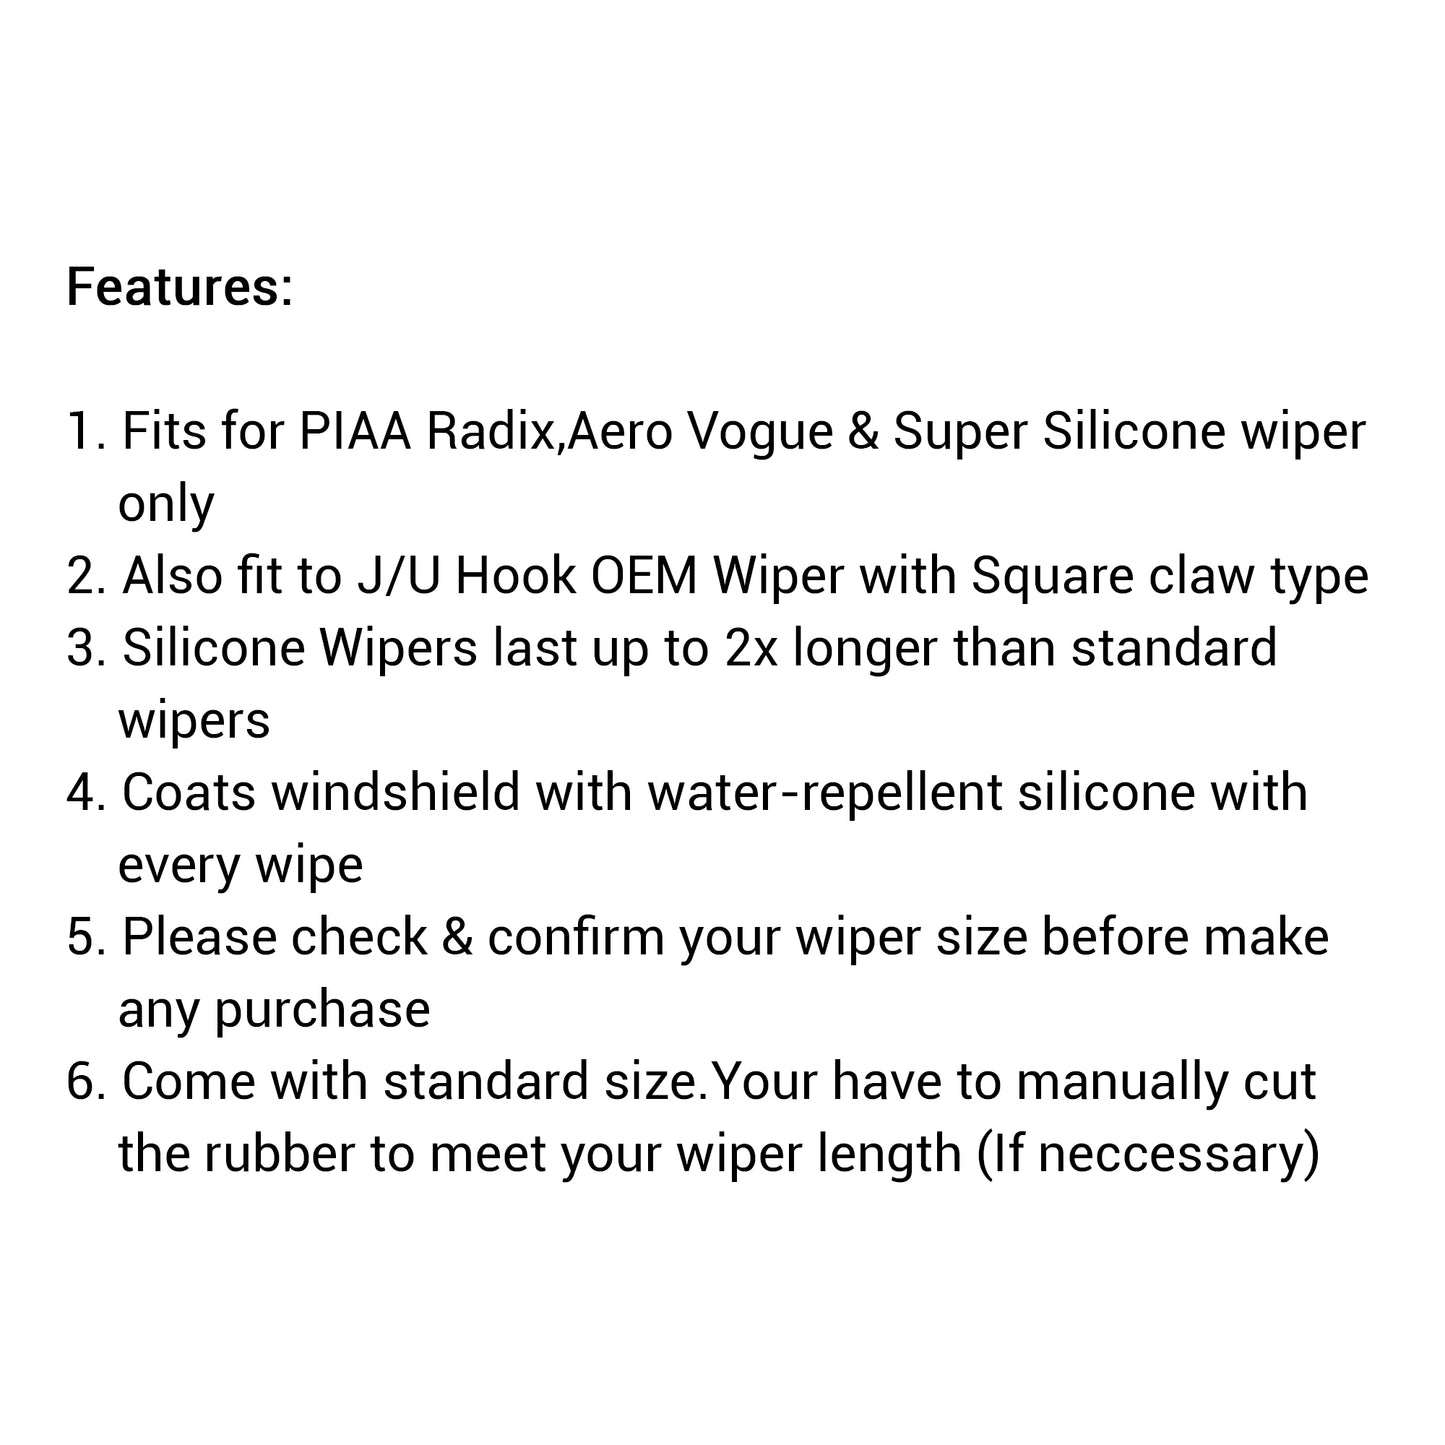 PIAA Silicone Wiper Refill for Uniblade ( 30" ) (Barcode: 4960311009498 )